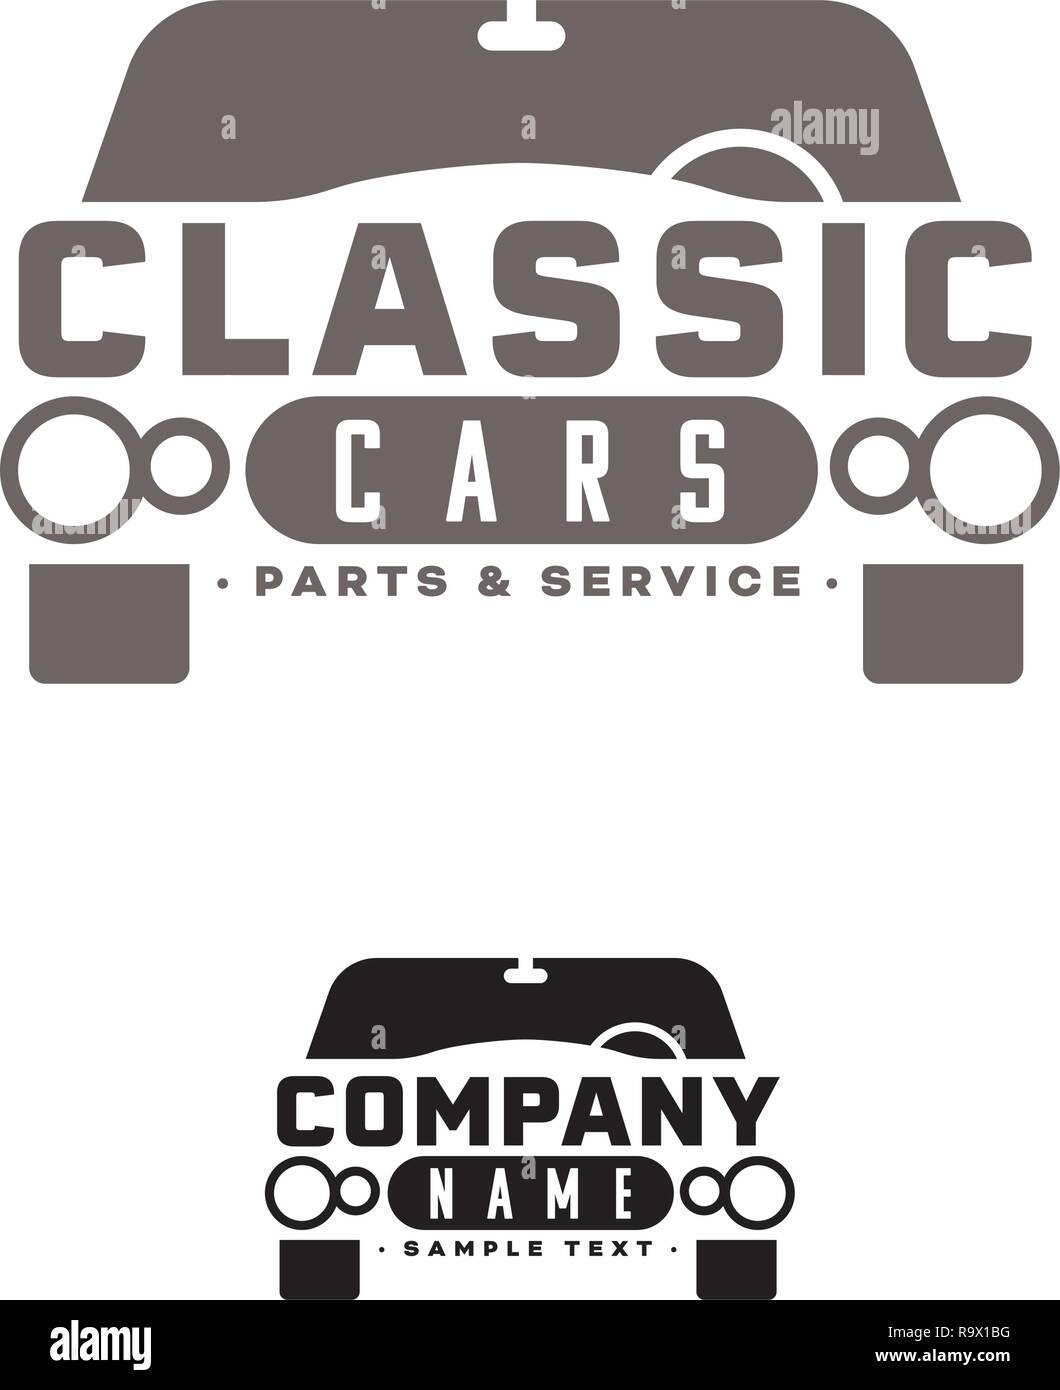 Company logo vettoriale modello per le auto d epoca concessionaria o garage con la classica limousine. Testo di esempio su livelli separati. Illustrazione Vettoriale